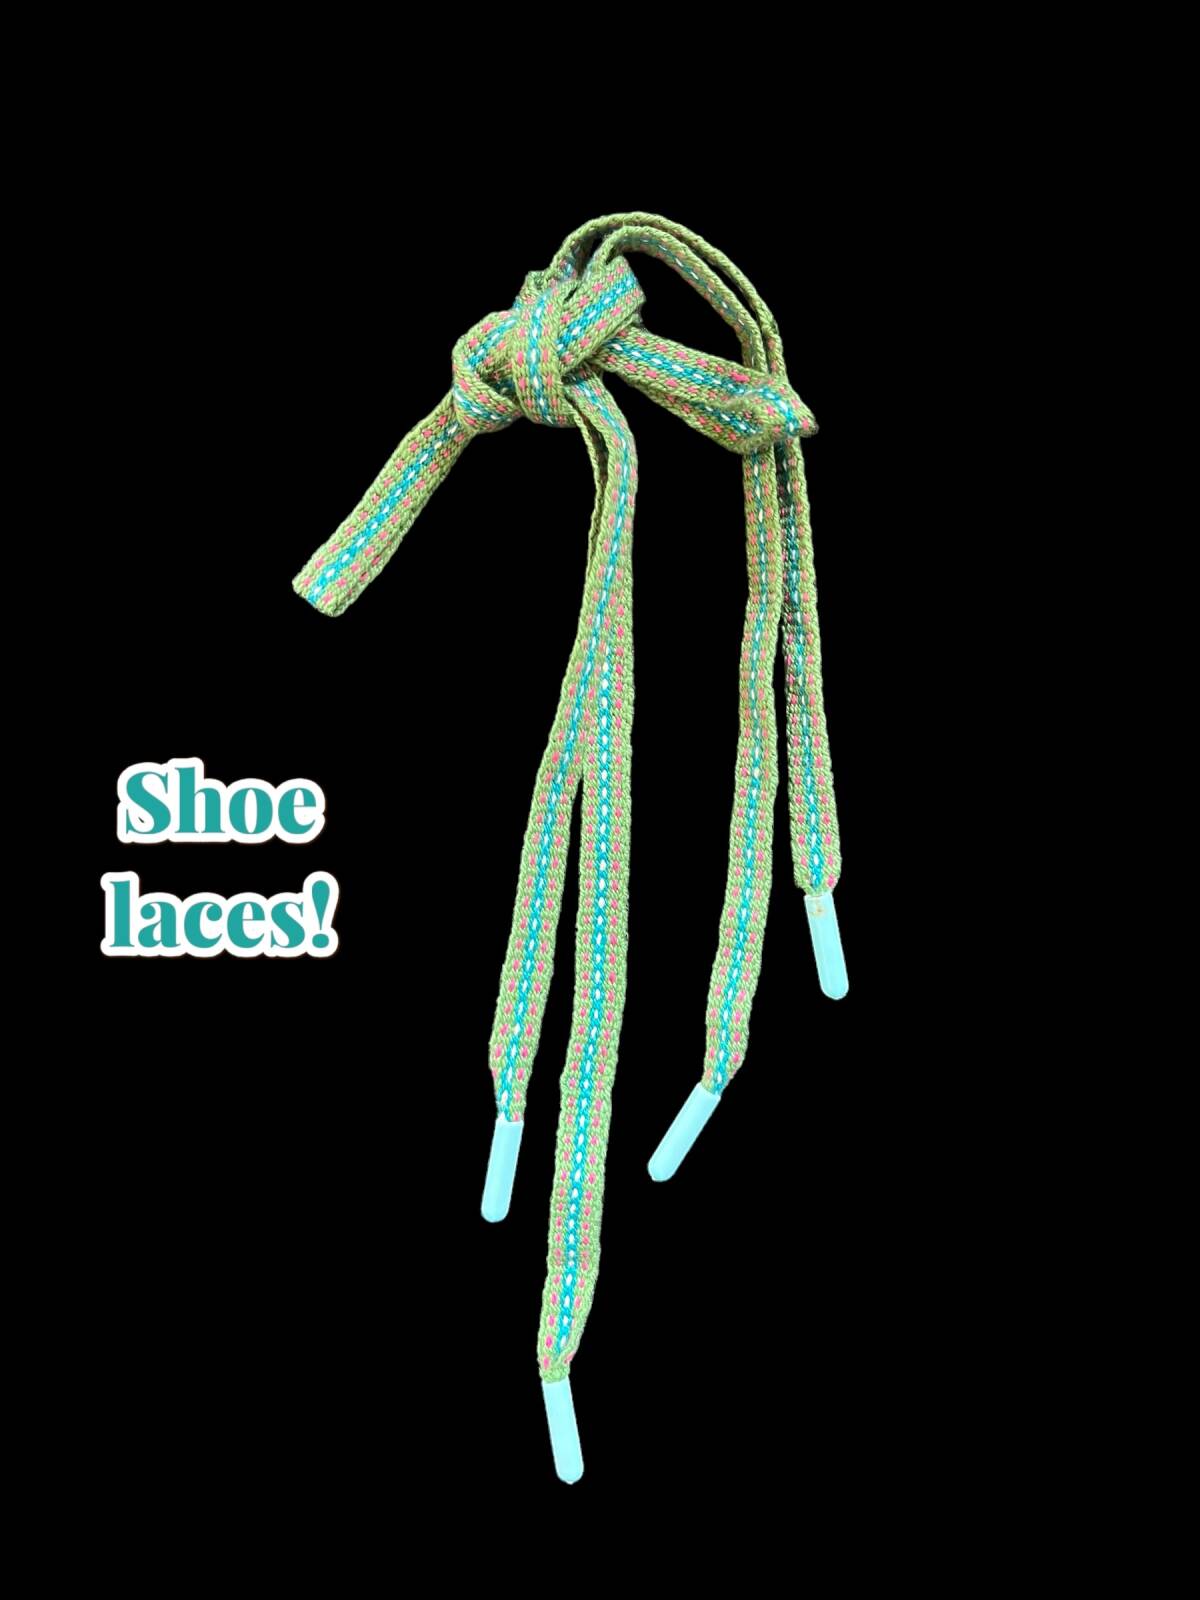 Beginner Inkle Weaving -  Shoe Laces